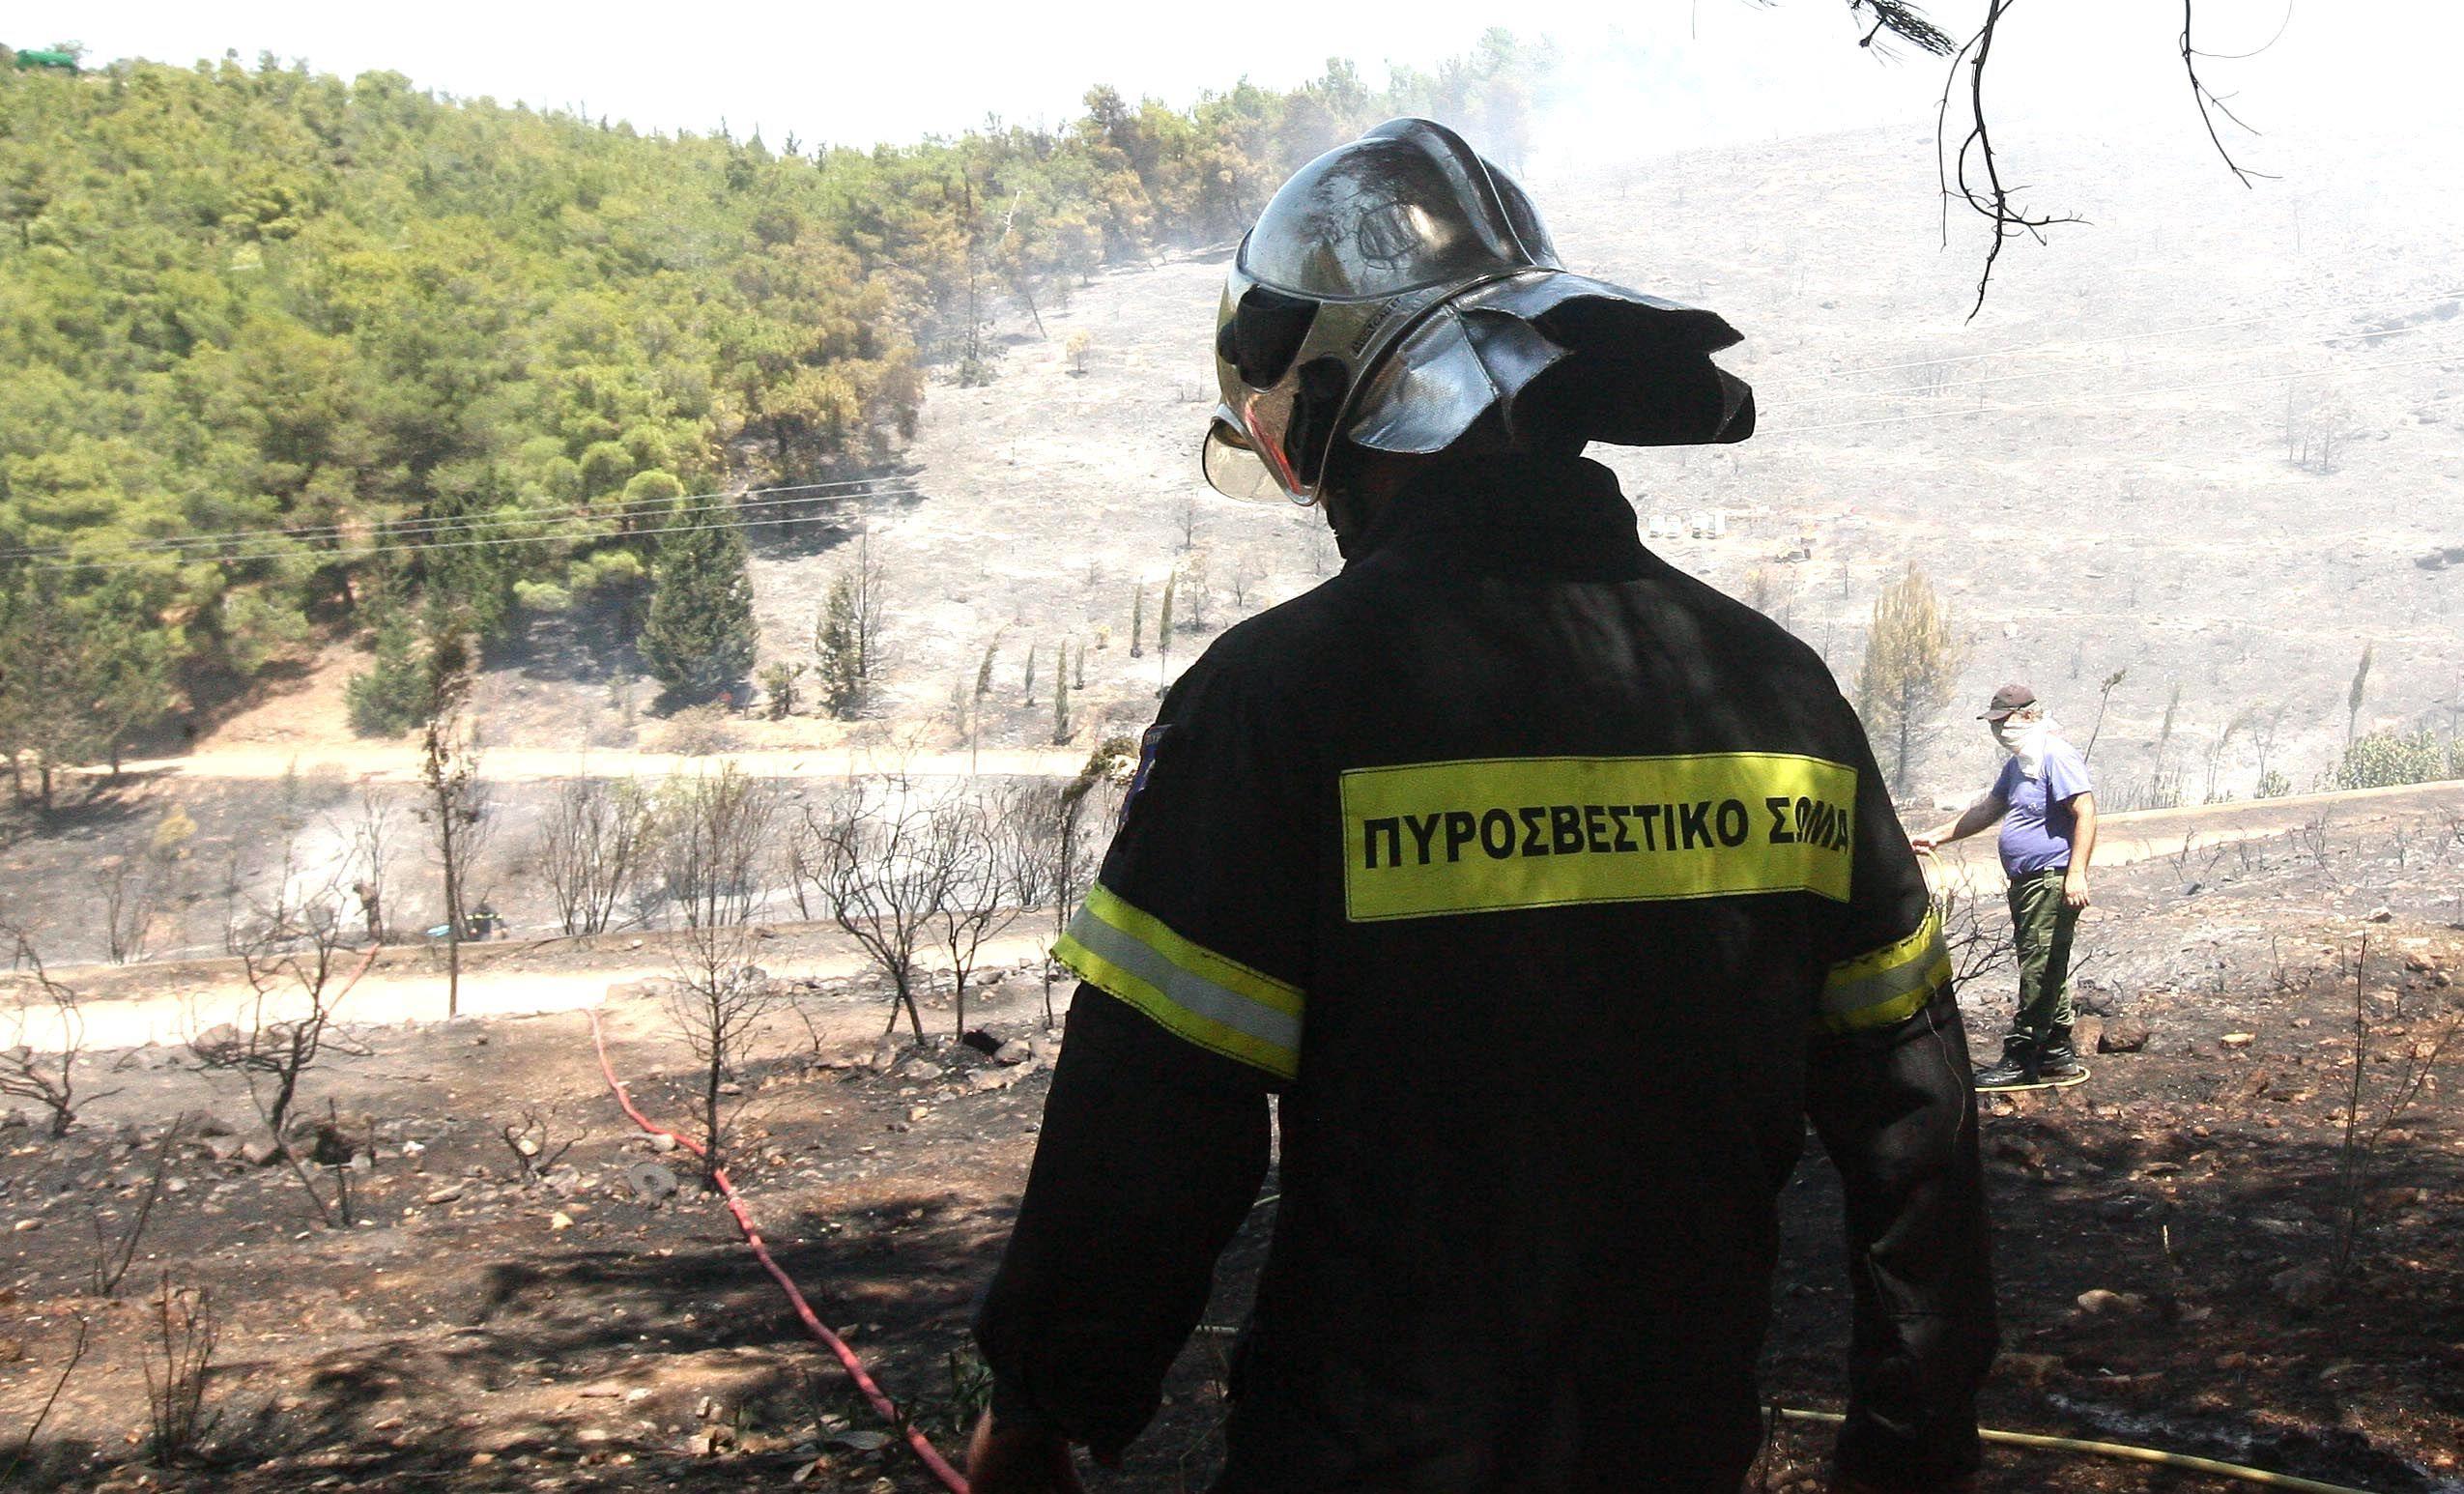 Πυροσβεστική: 52 πυρκαγιές από το πρωί σε ολόκληρη την Ελλάδα